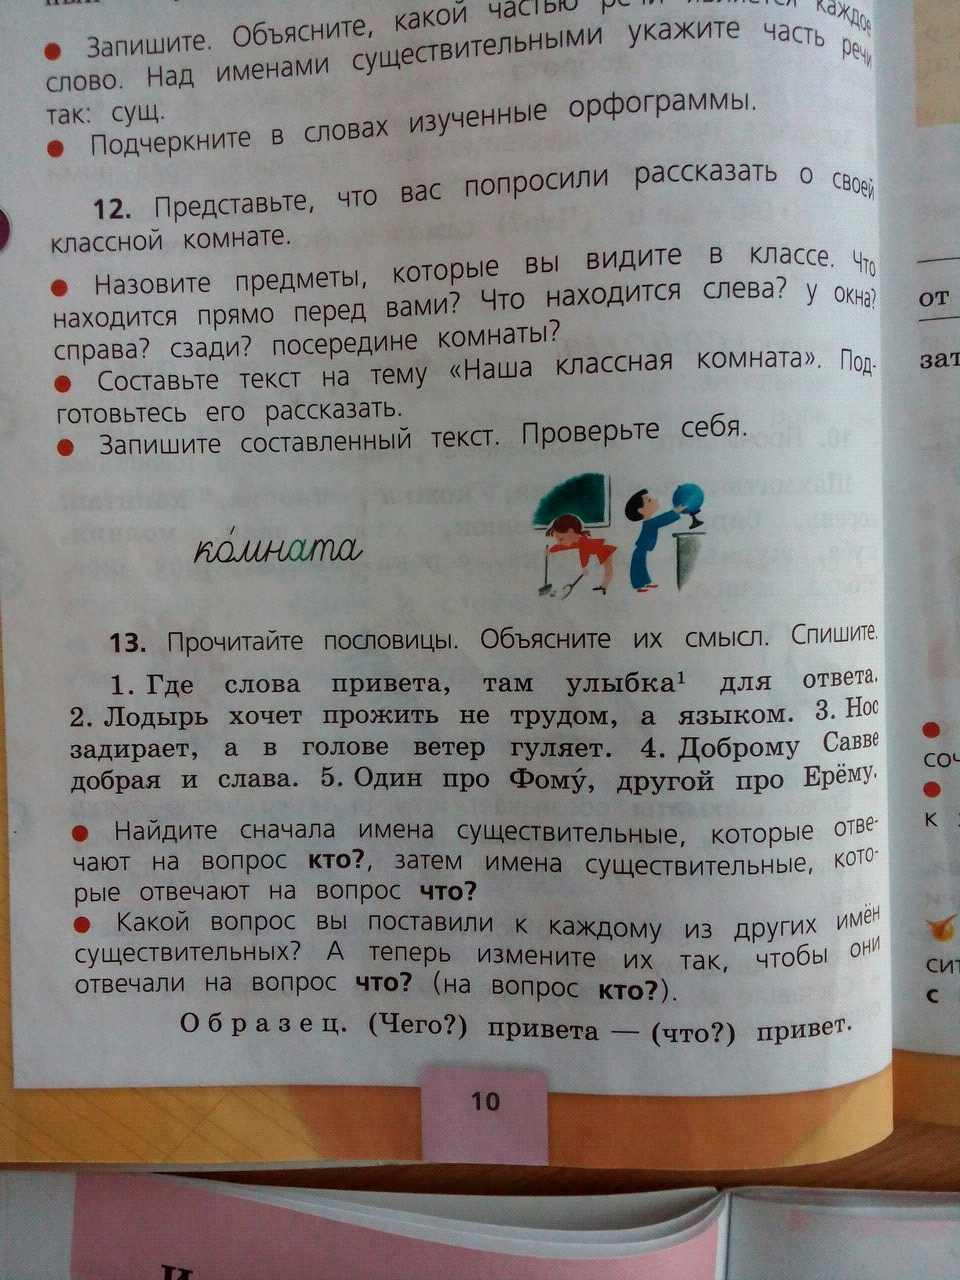 Конспект по русскому языку на тему: Значение употребления имен существительных в речи (3 класс)